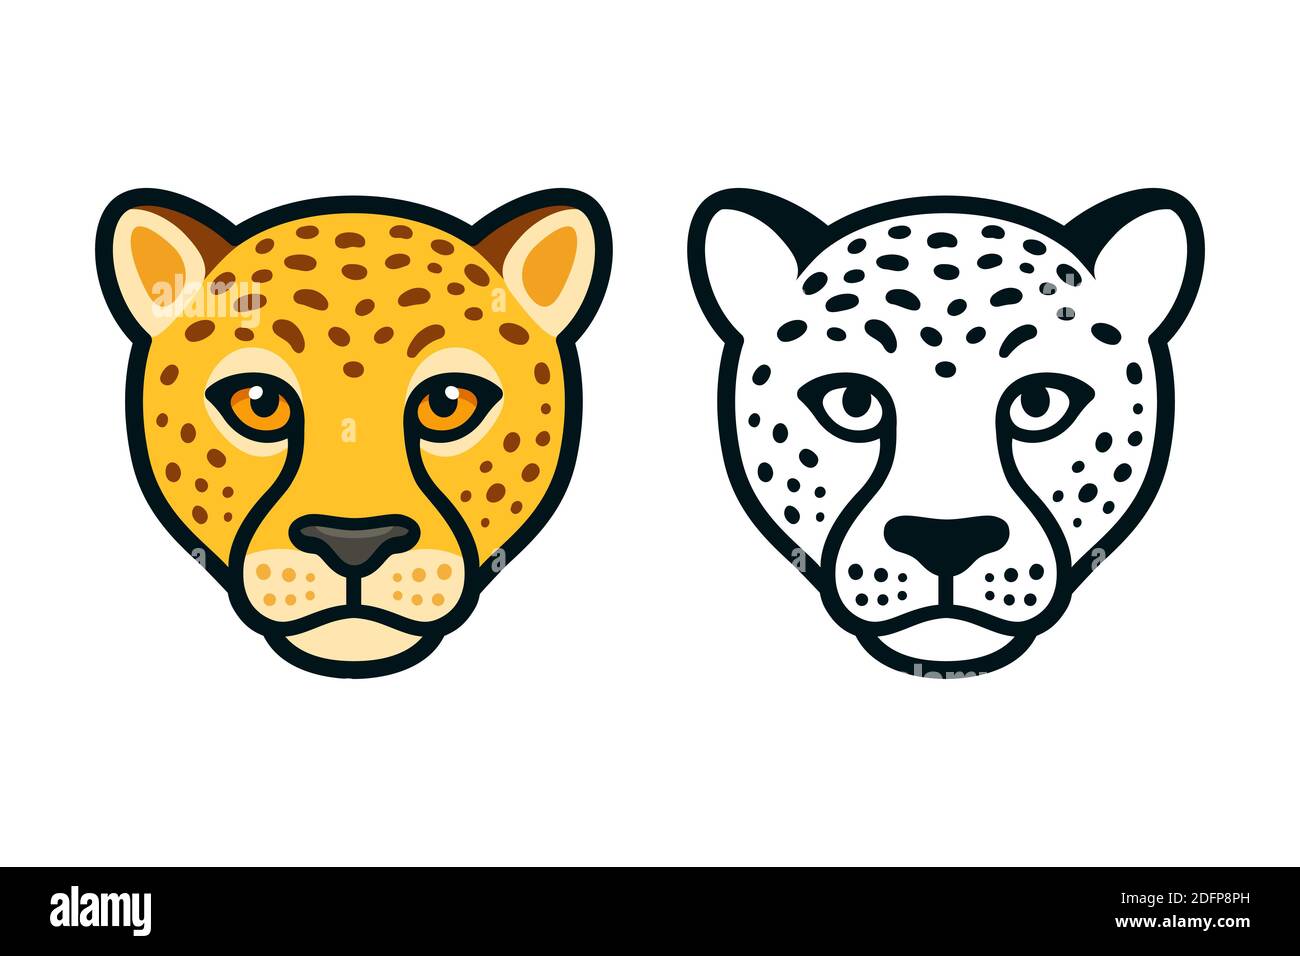 Cartoon Gepard Kopf, Farbe und schwarz und weiß. Frontansicht, Maskottchen- oder Logo-Design. Isolierte Vektordarstellung. Stock Vektor